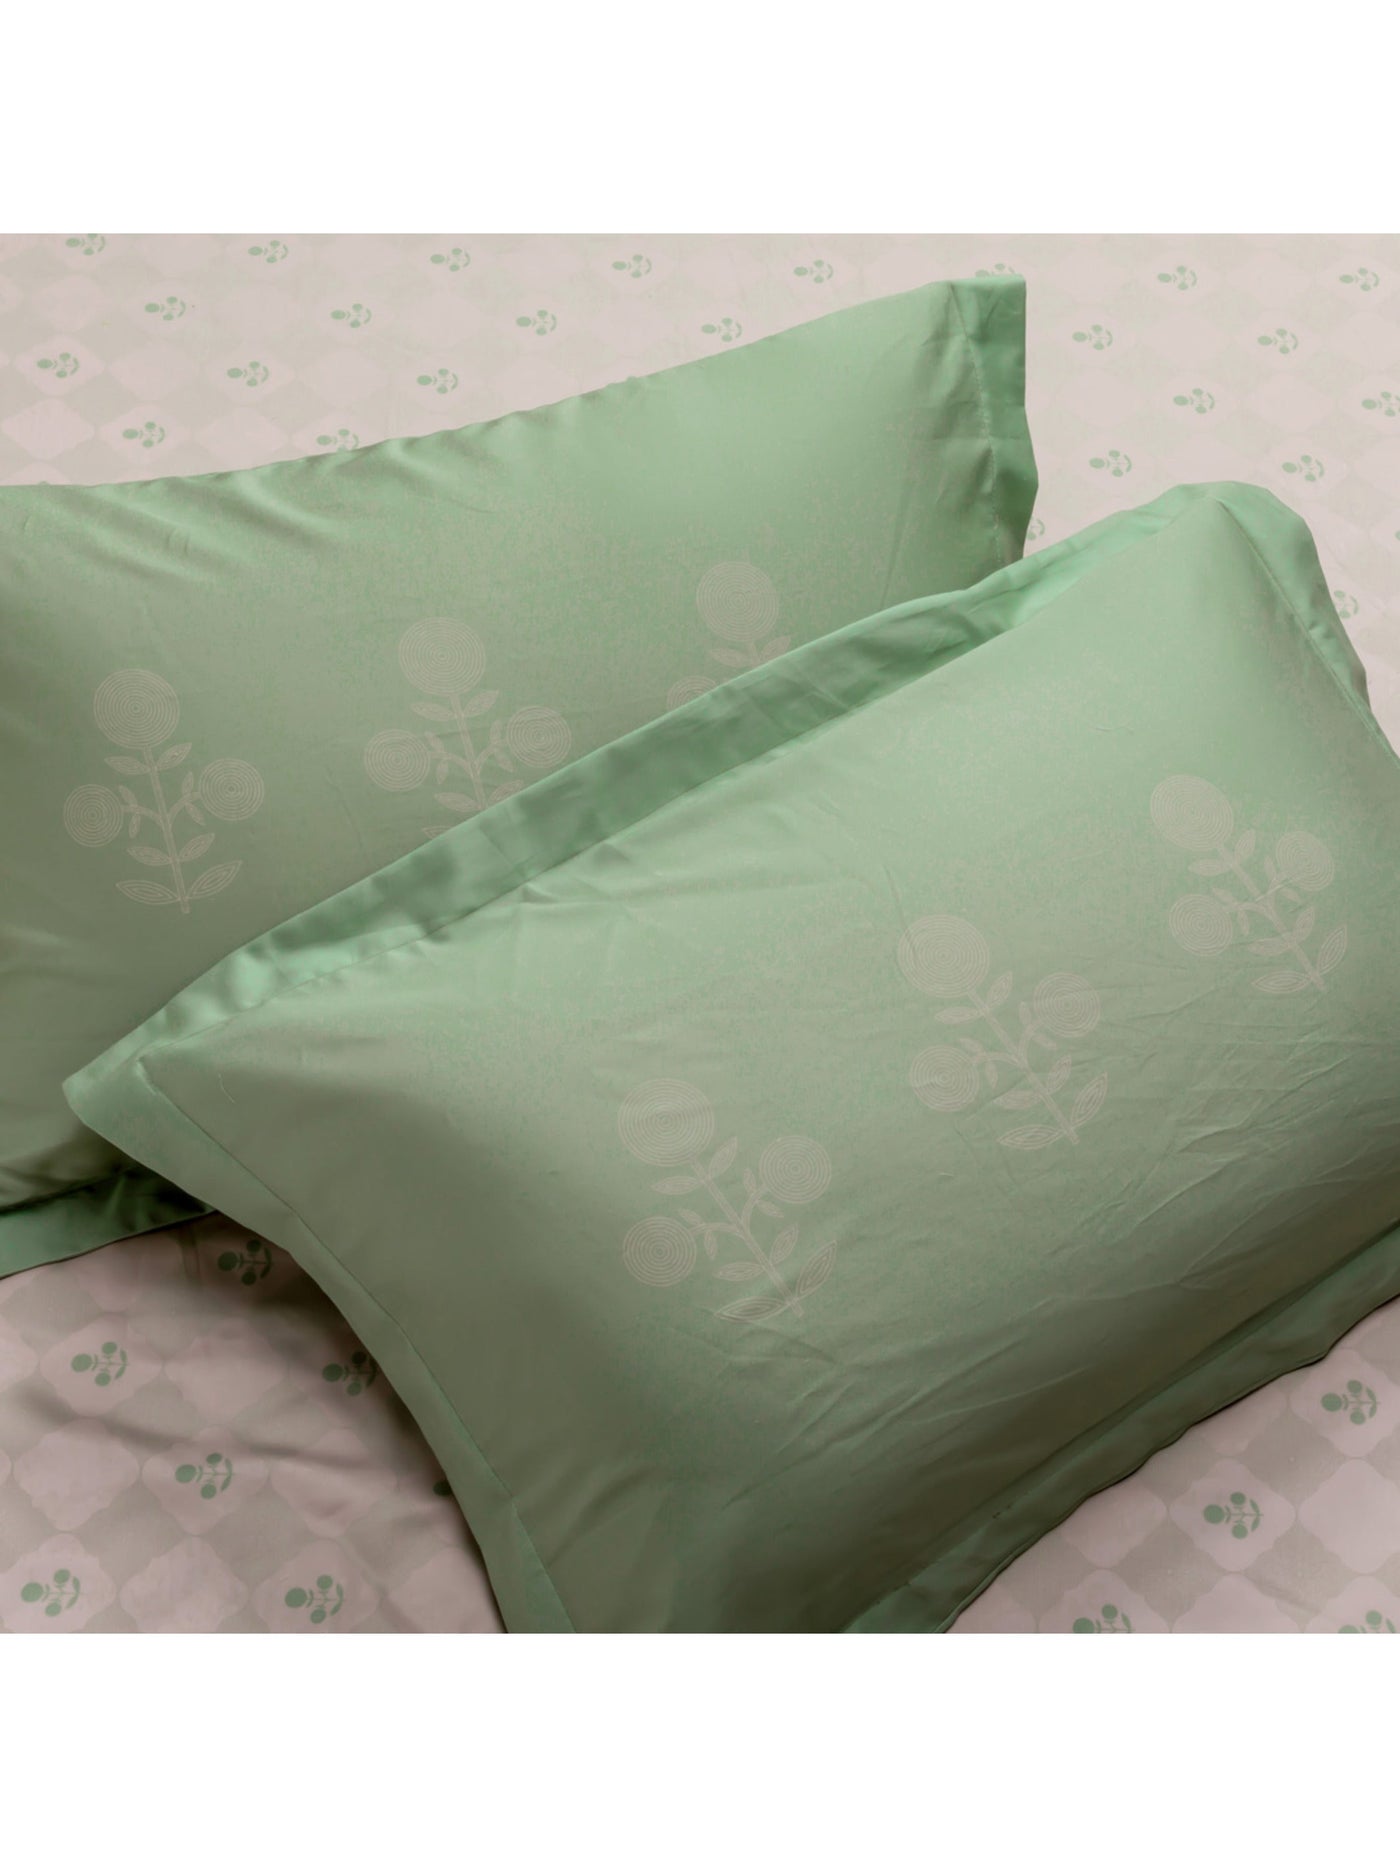 The Bageecha Bedsheet In Tender Green